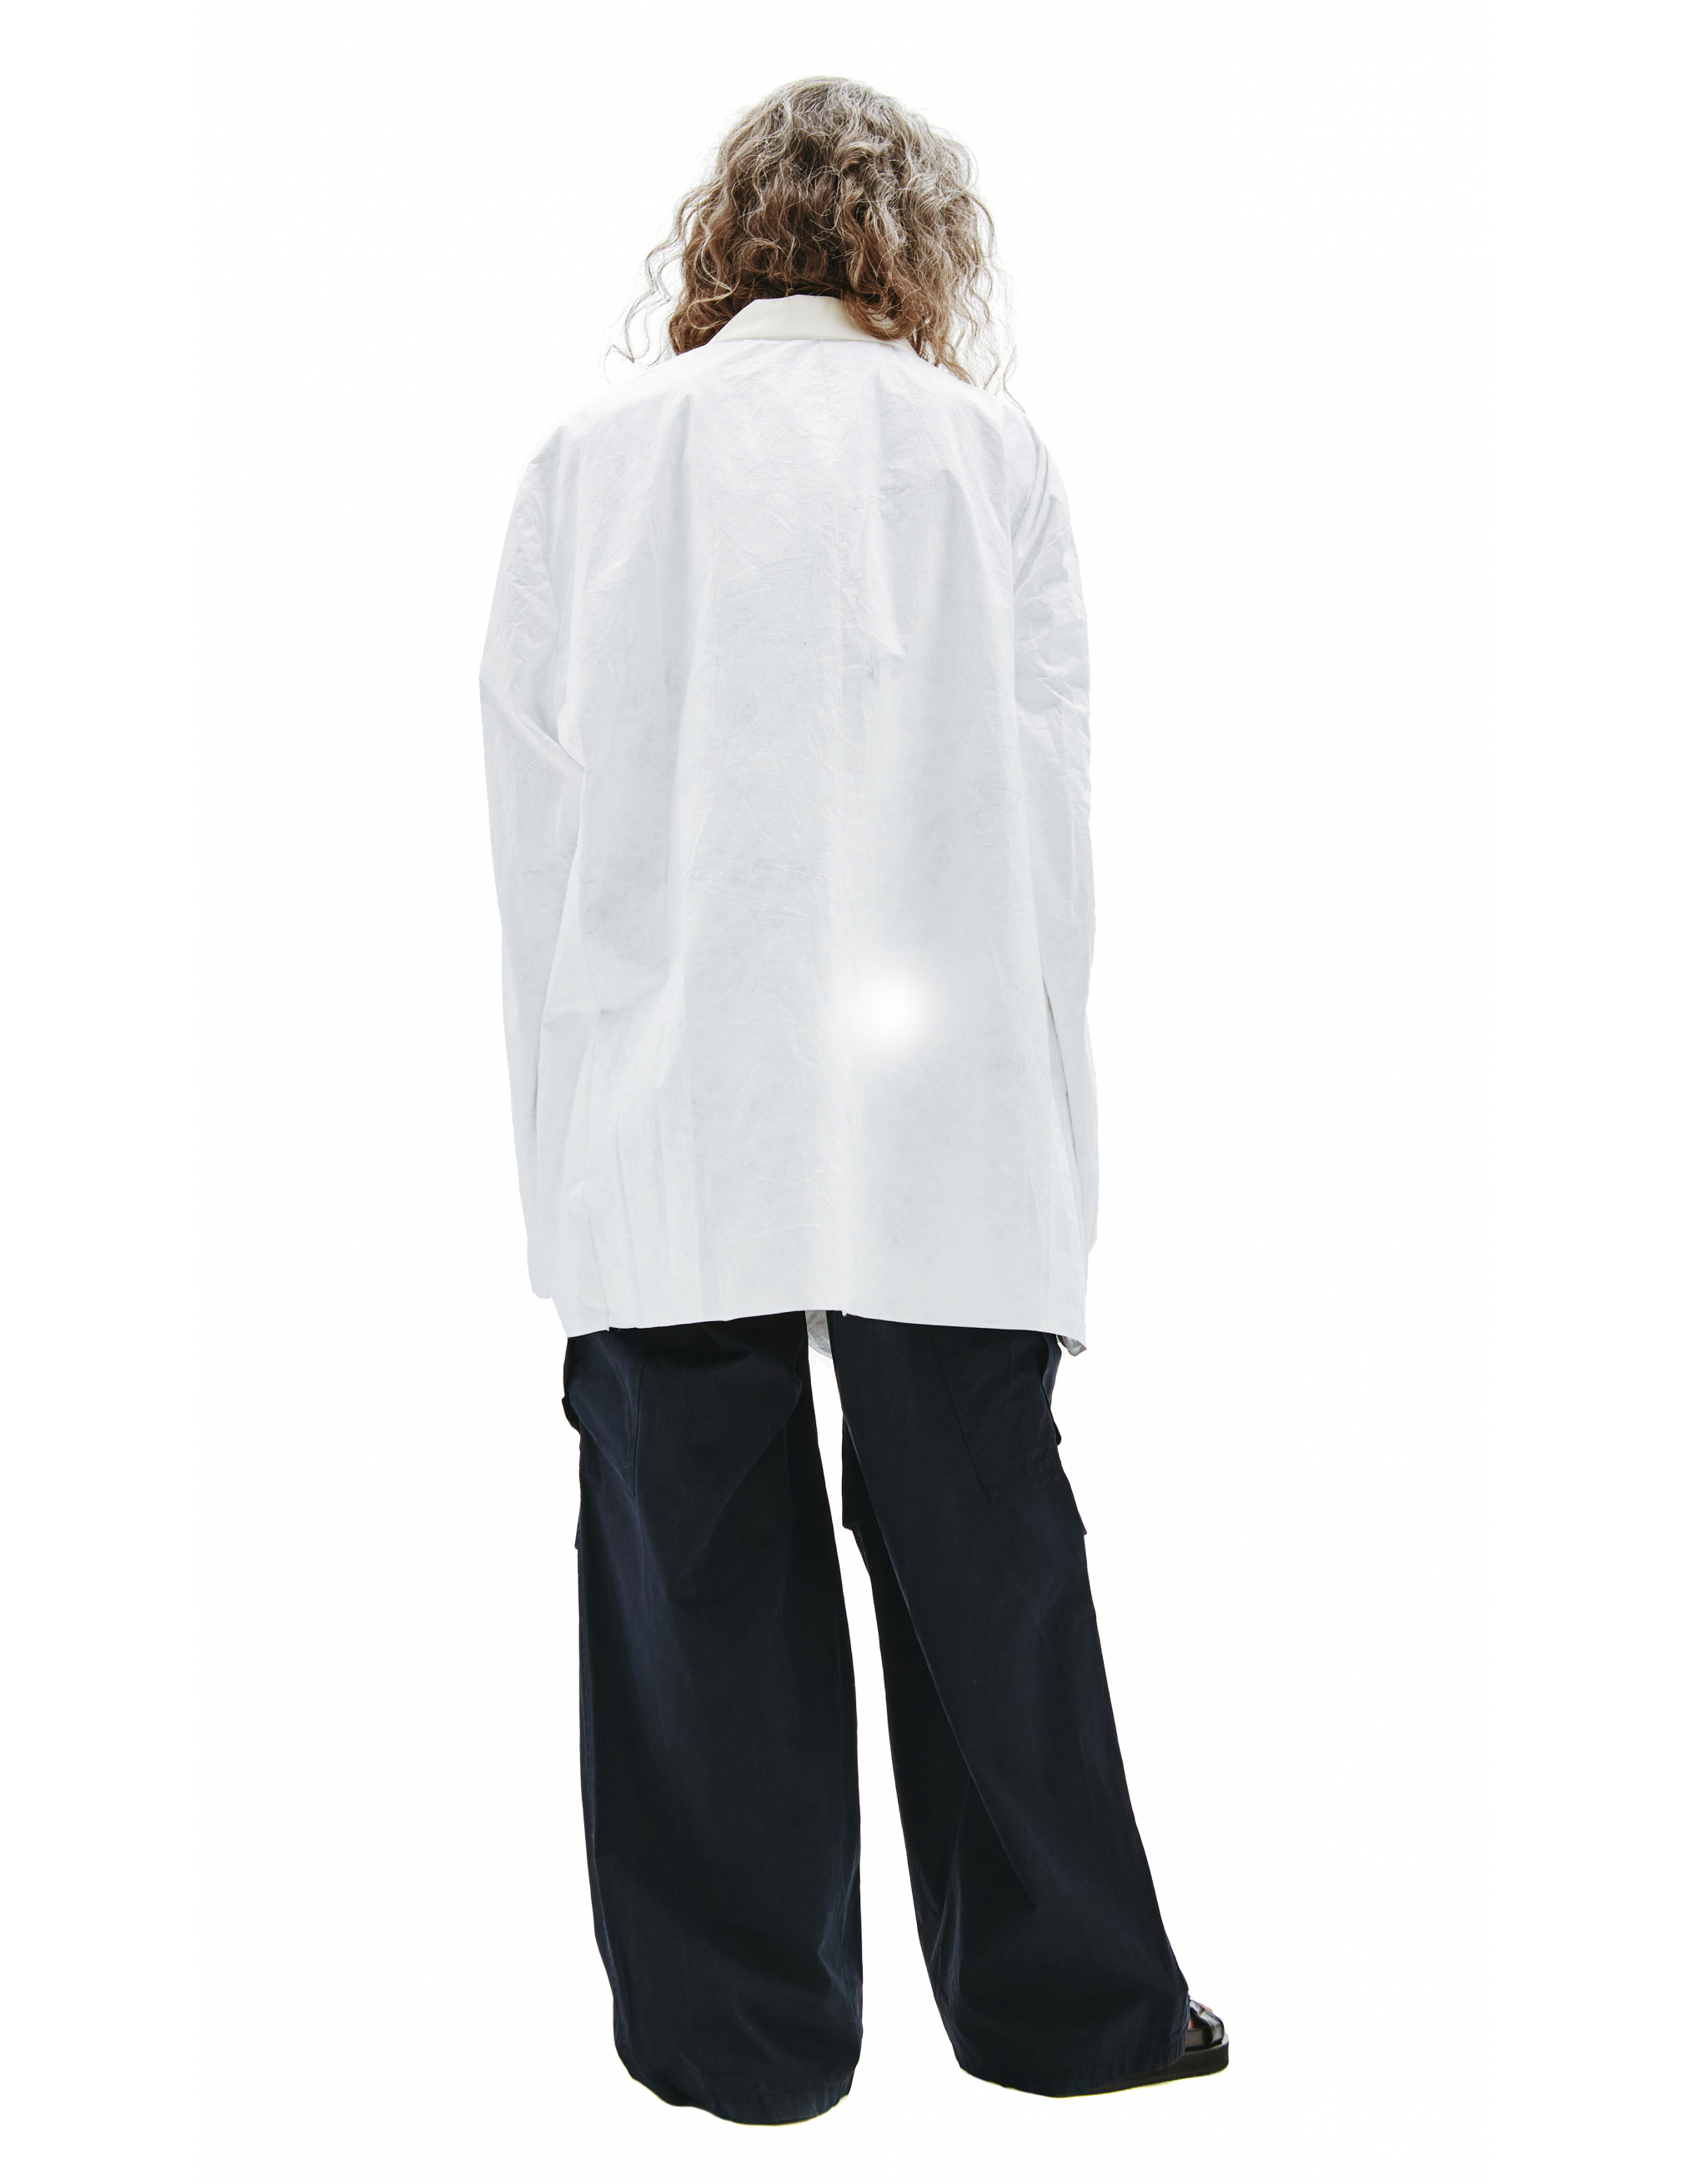 Белый пиджак из тайвека - Raf Simons 211-M526-30018-0010 Фото 3